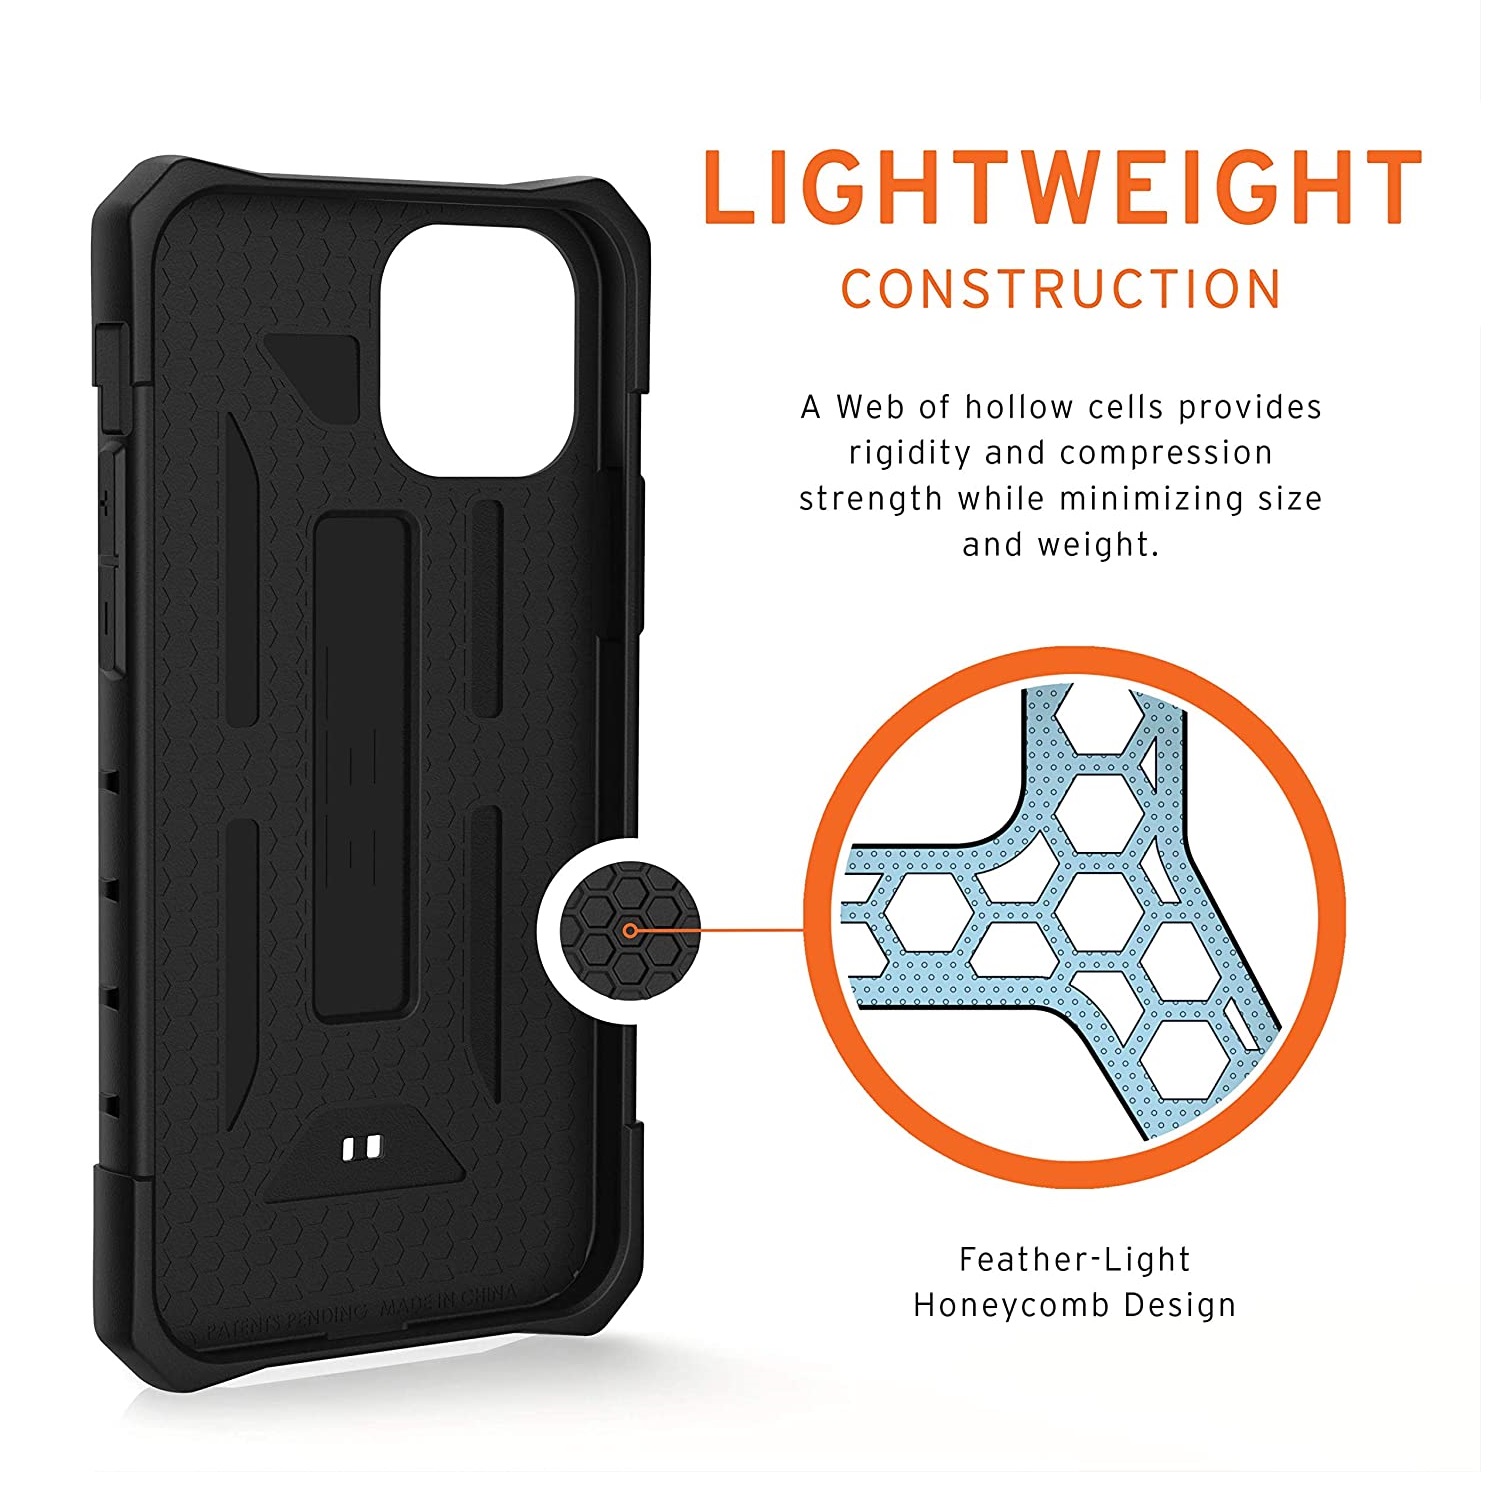 Противоударный защитный чехол UAG Pathfinder Series Case Black для iPhone 12/12 Pro